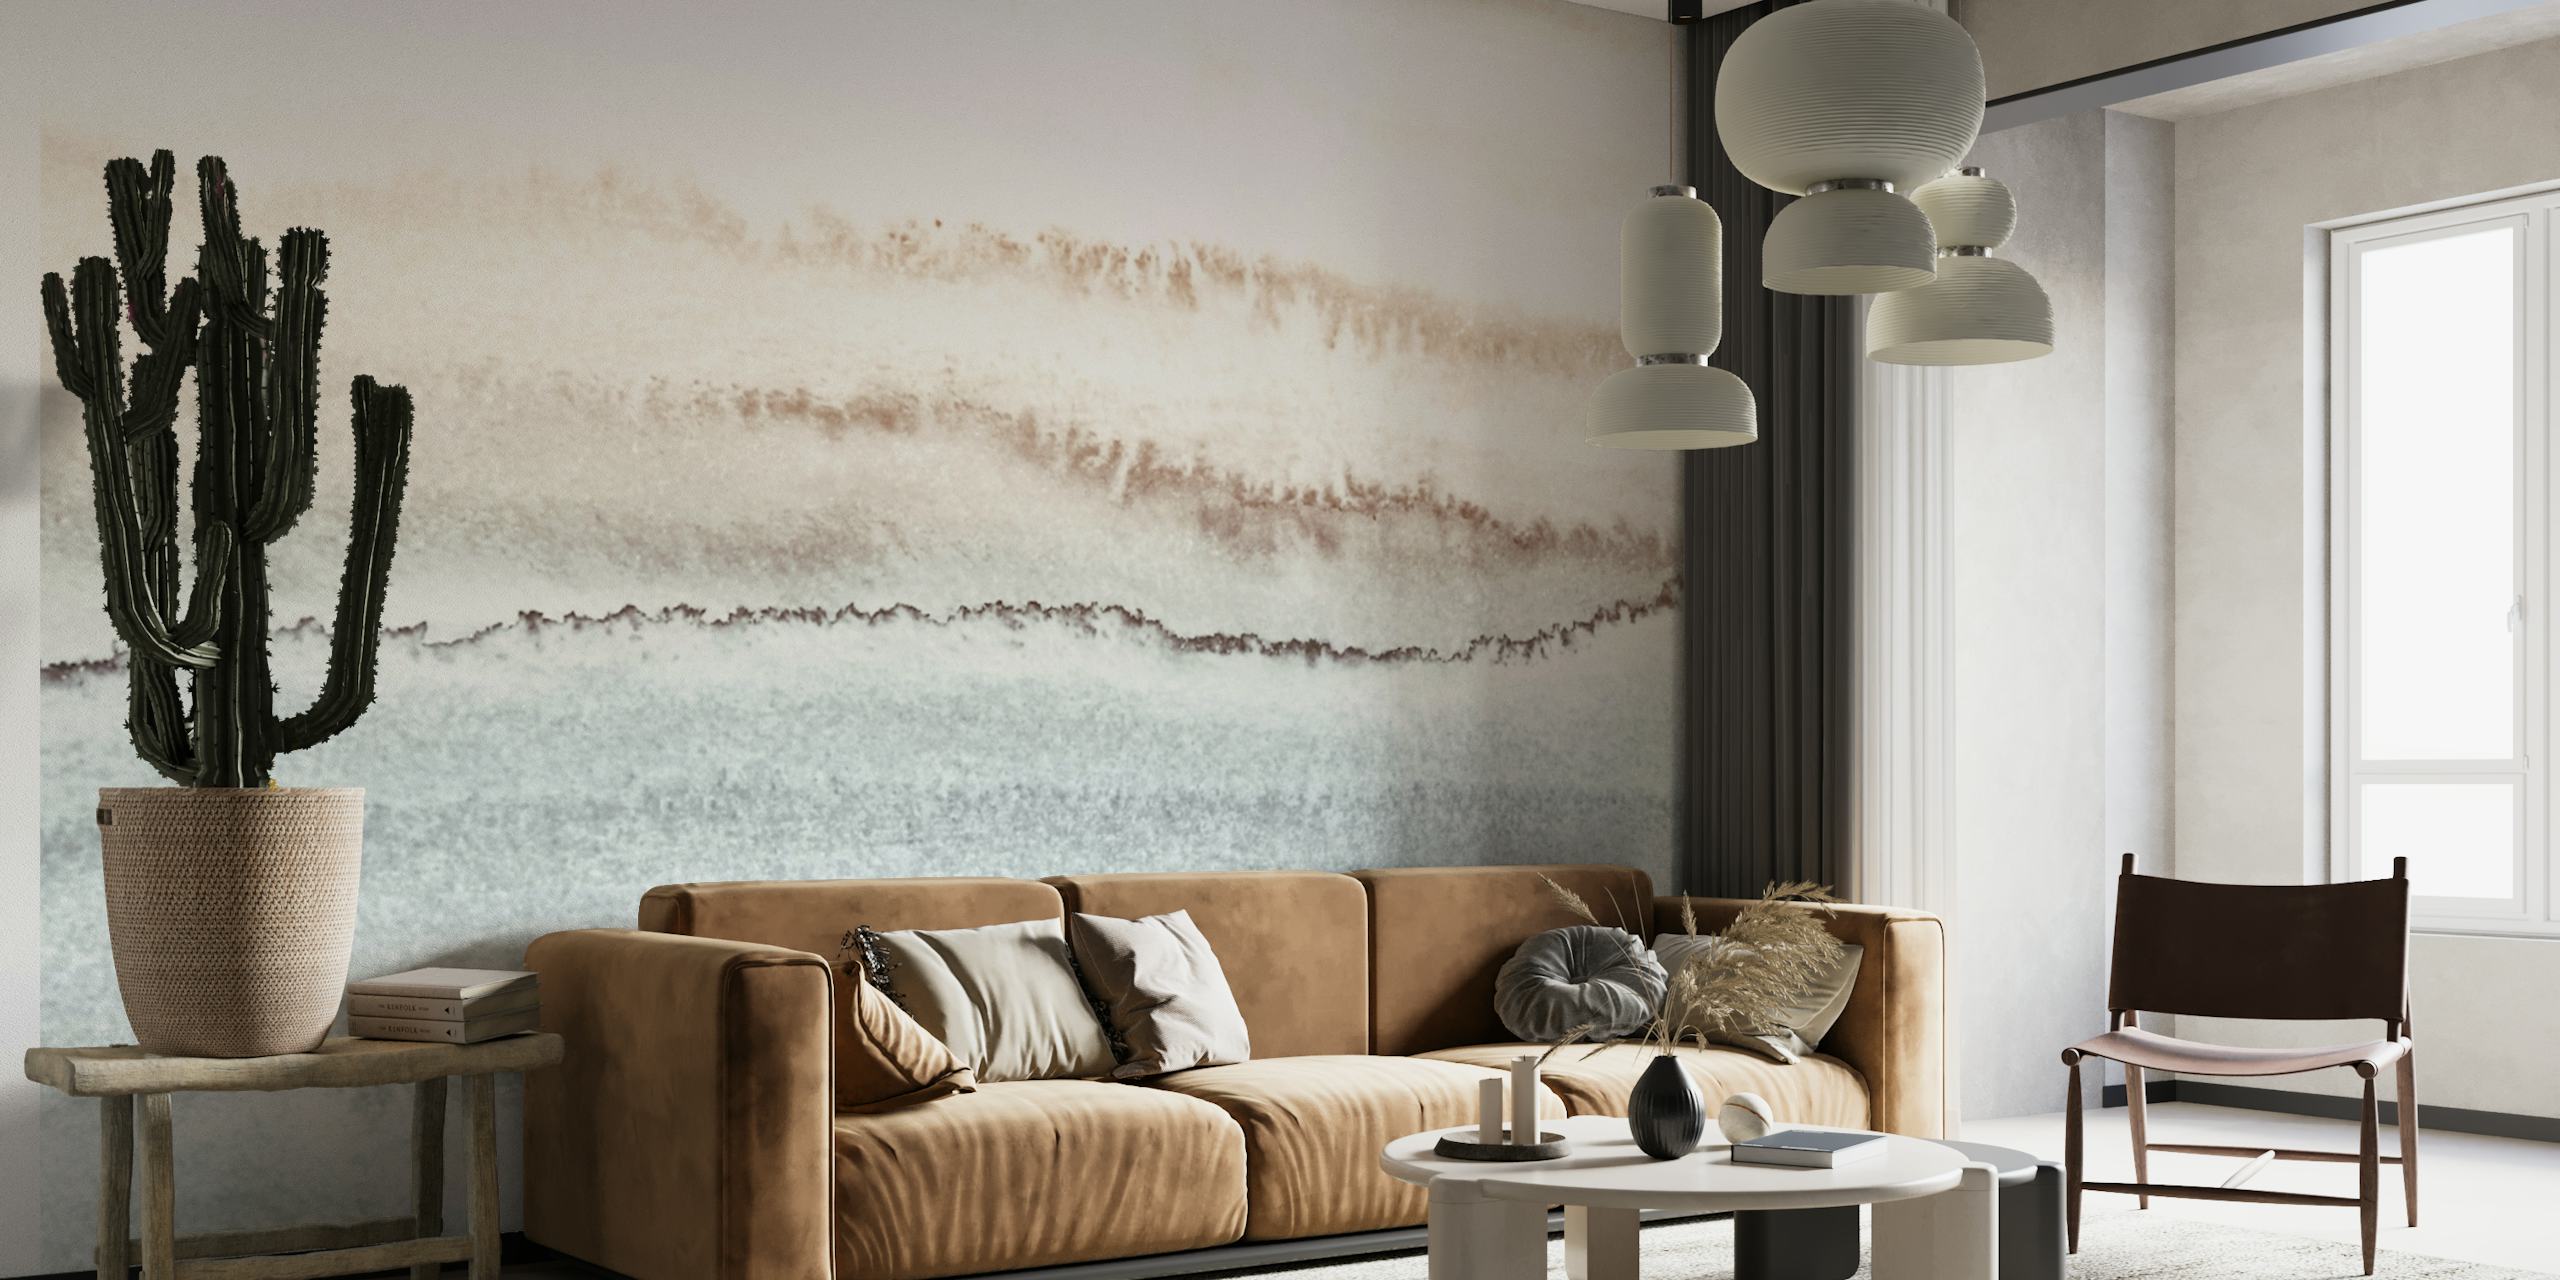 Mural de pared abstracto inspirado en el océano con tonos tierra que se mezclan en un degradado.